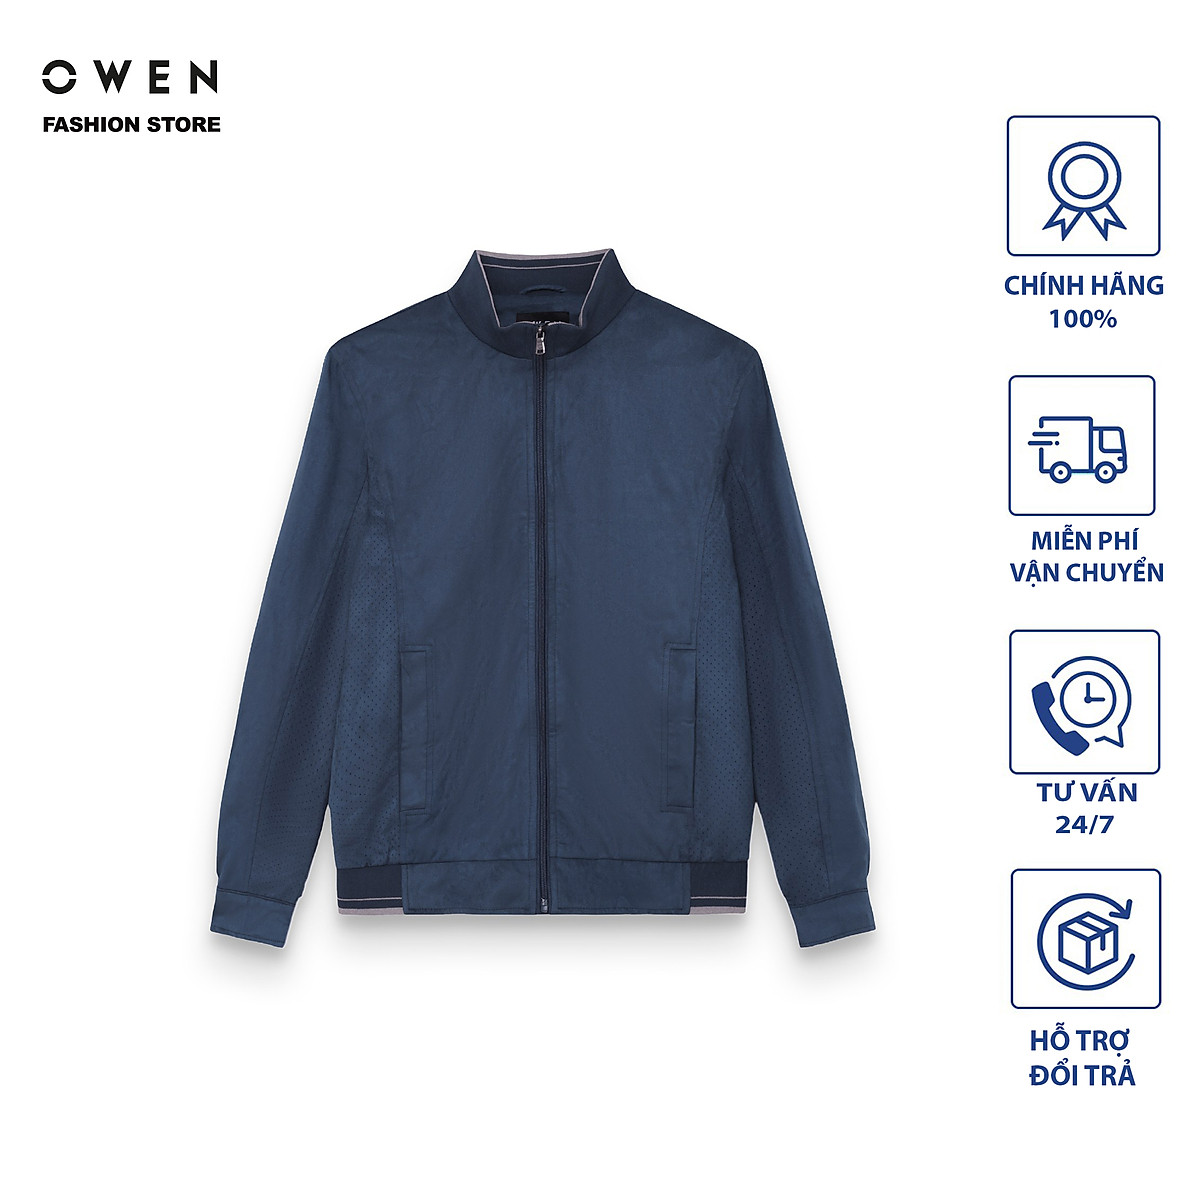 sale shock áo vest owen chính hãng new nguyên tem  106246750